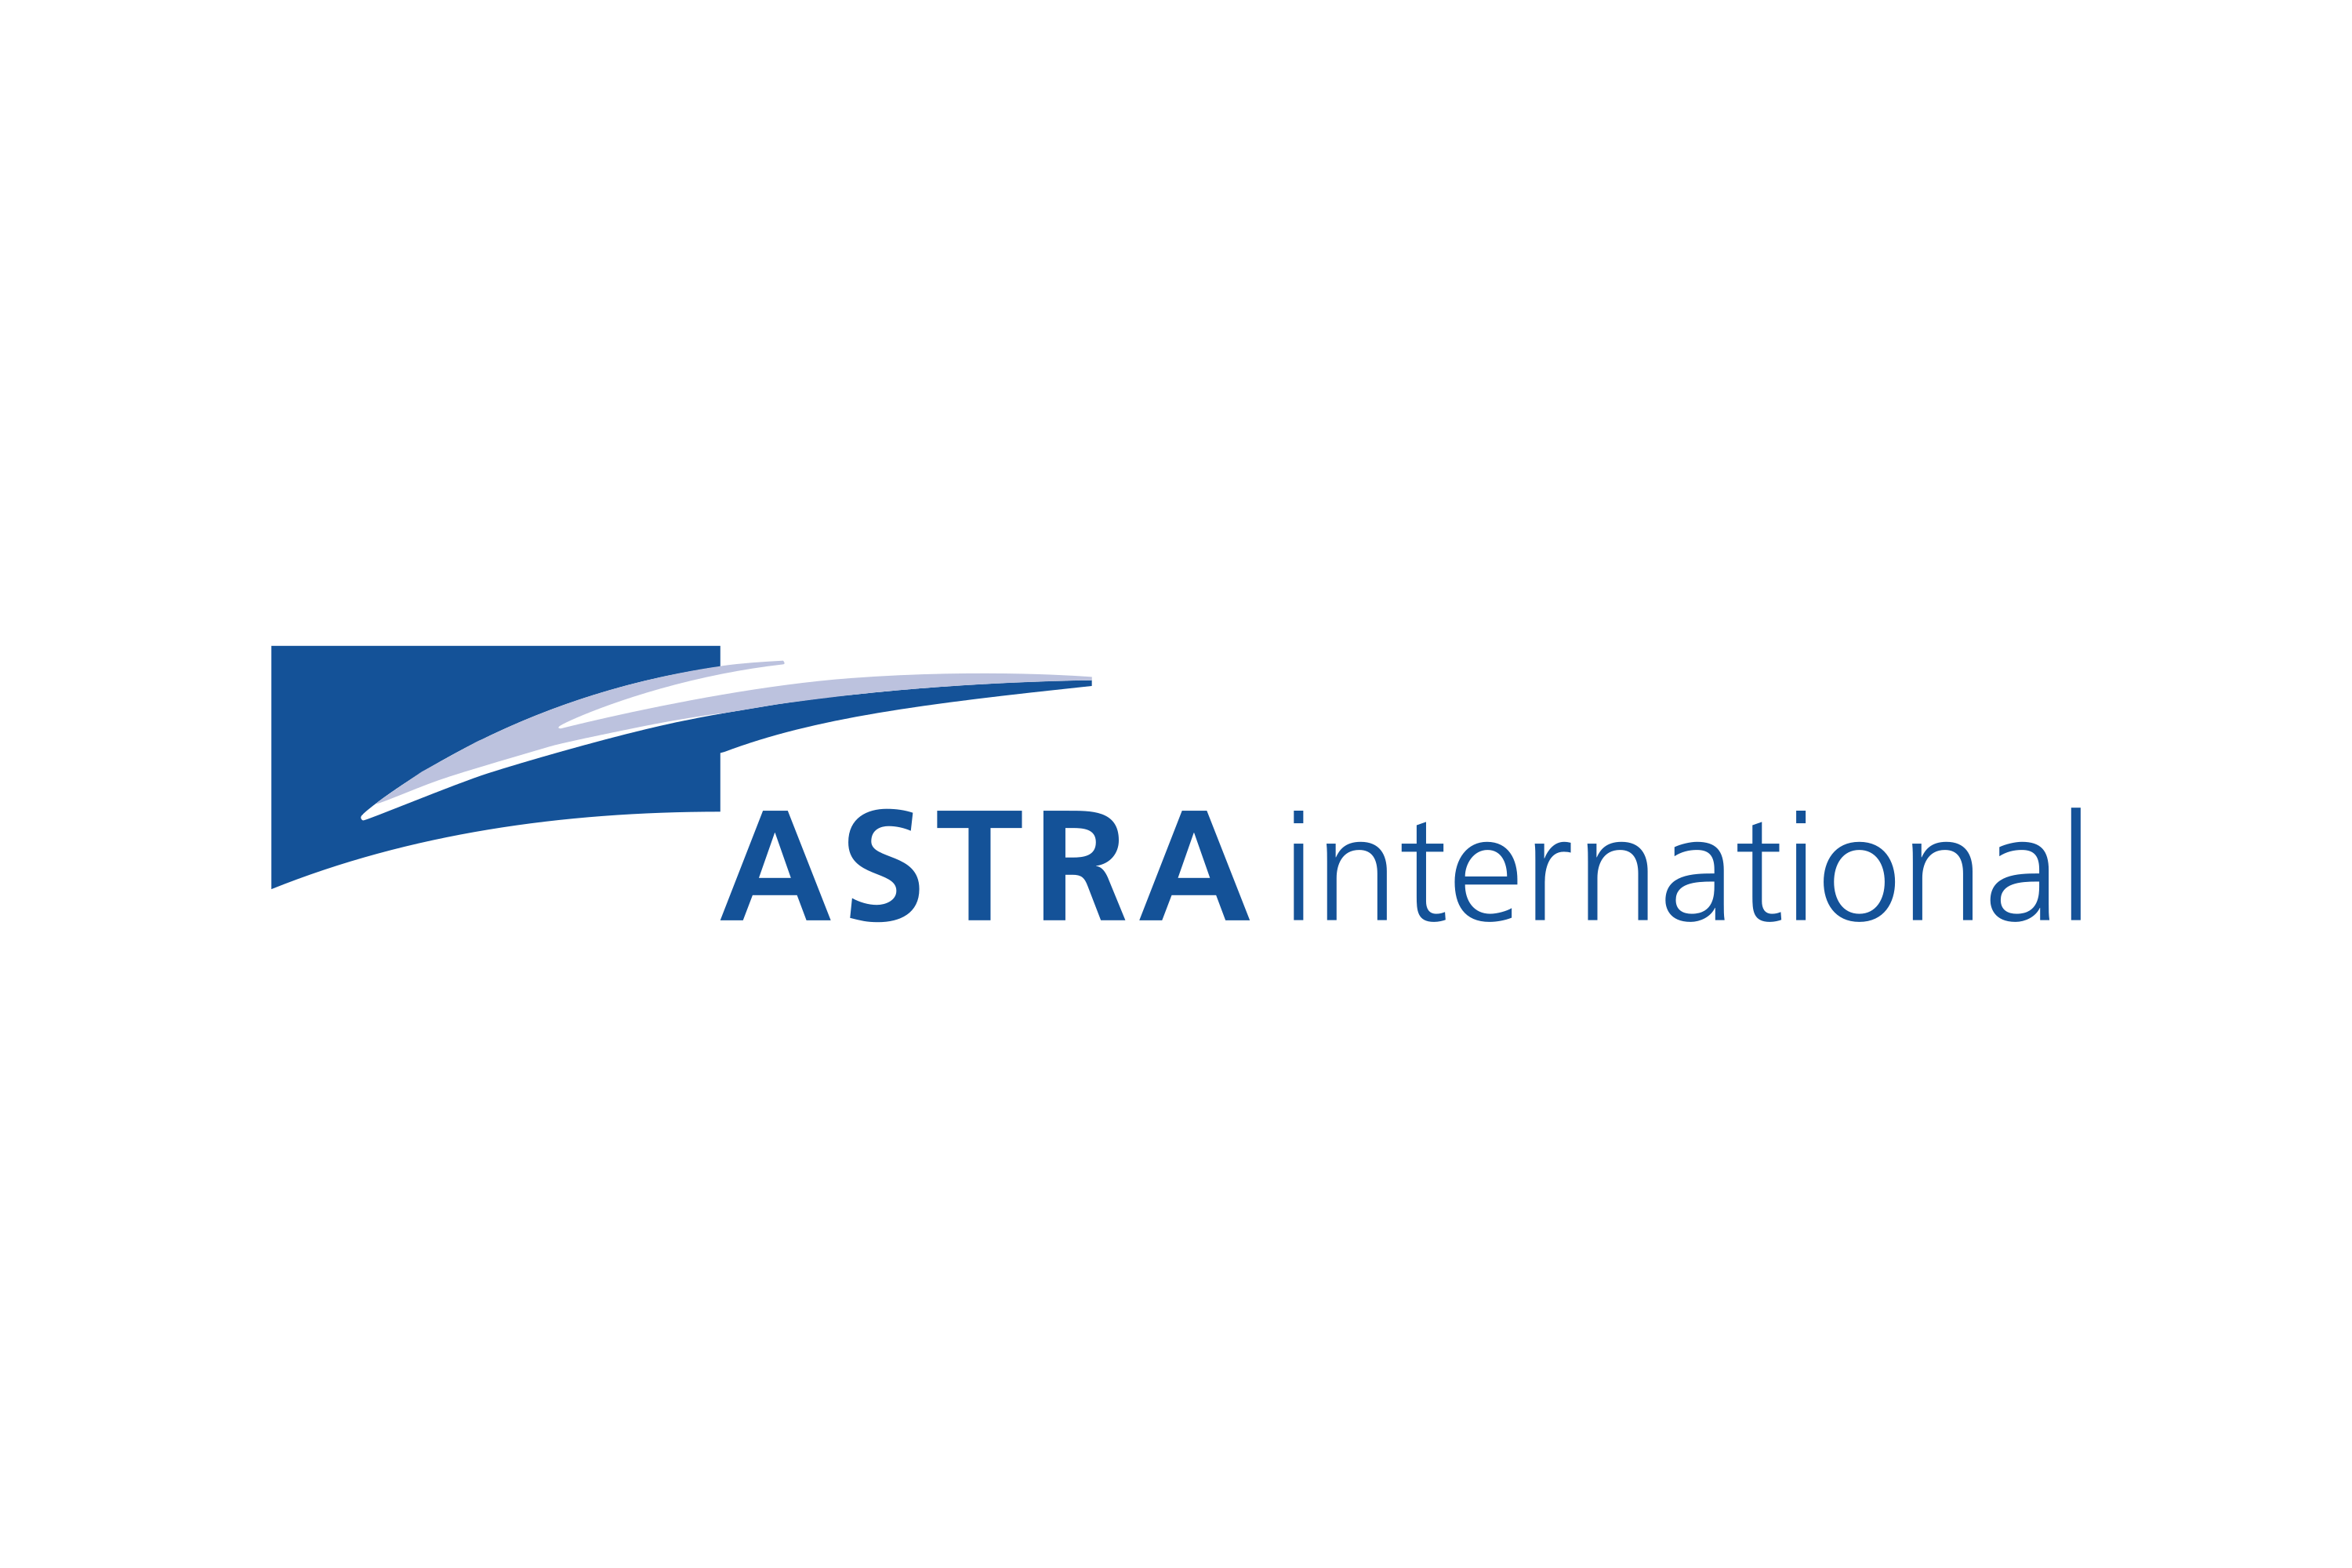 Astra International Logo Png - KibrisPDR